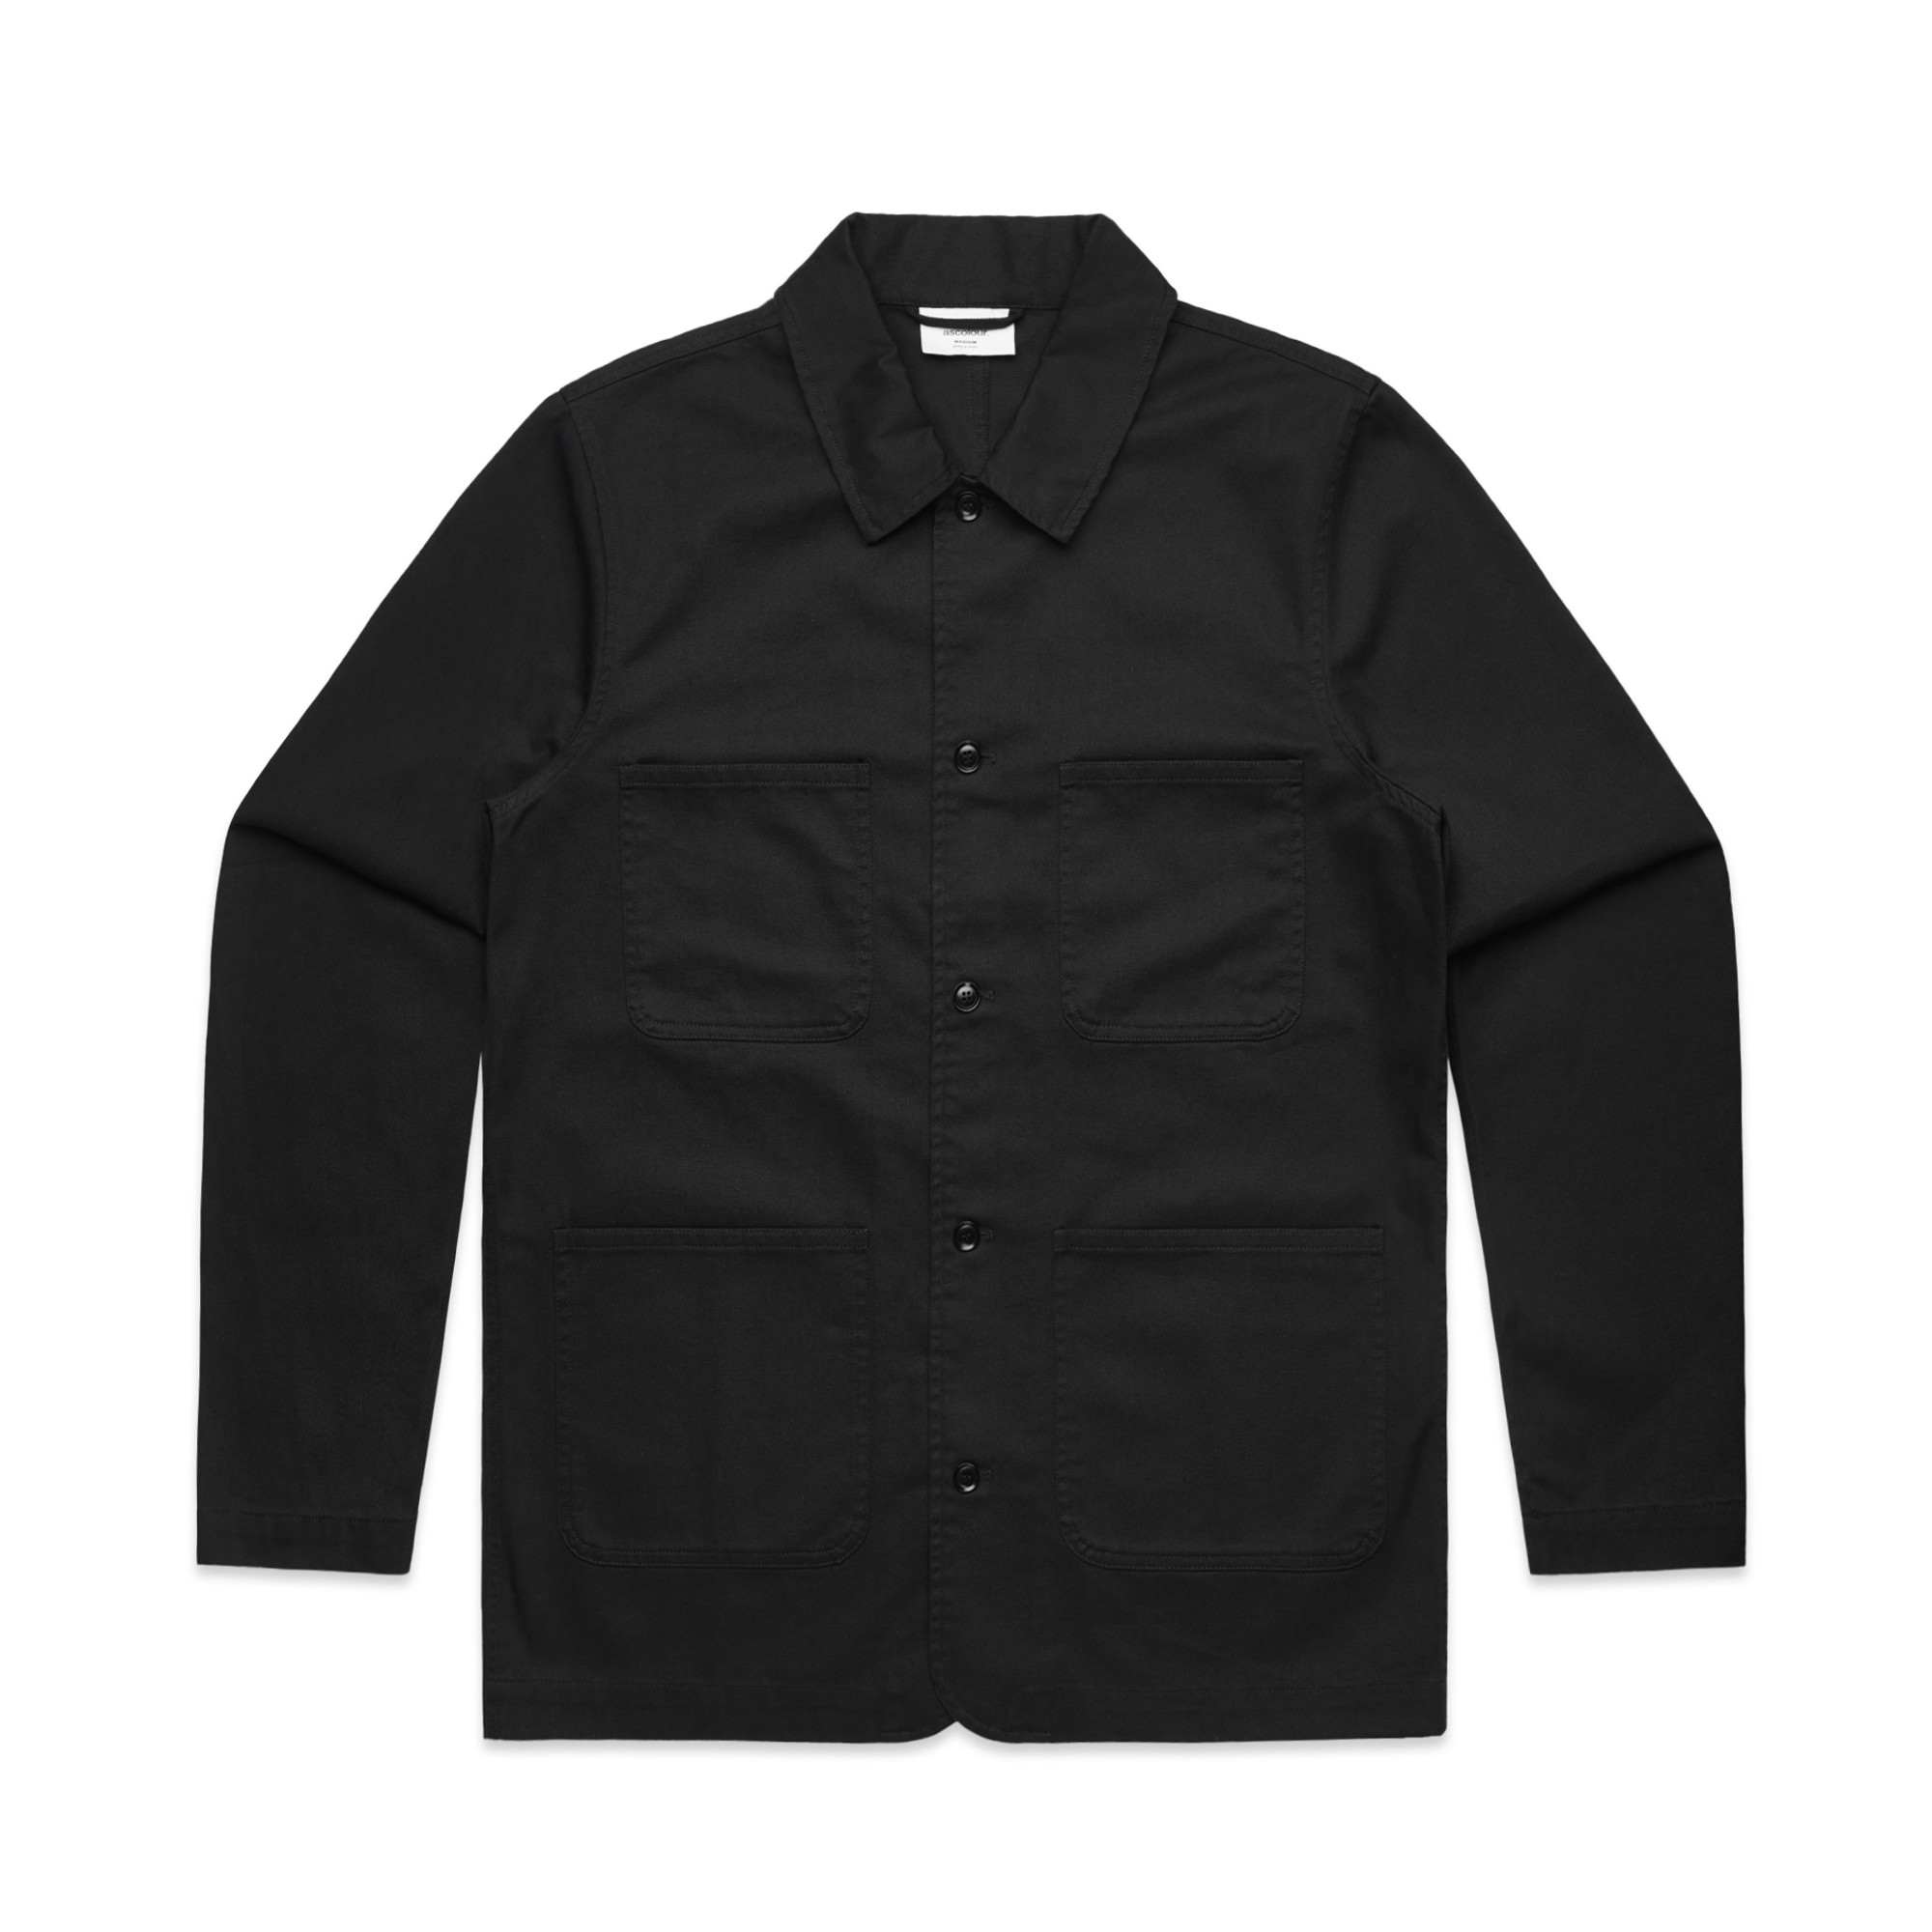 AS Colour Men's Chore Cotton Jacket - Think Promo